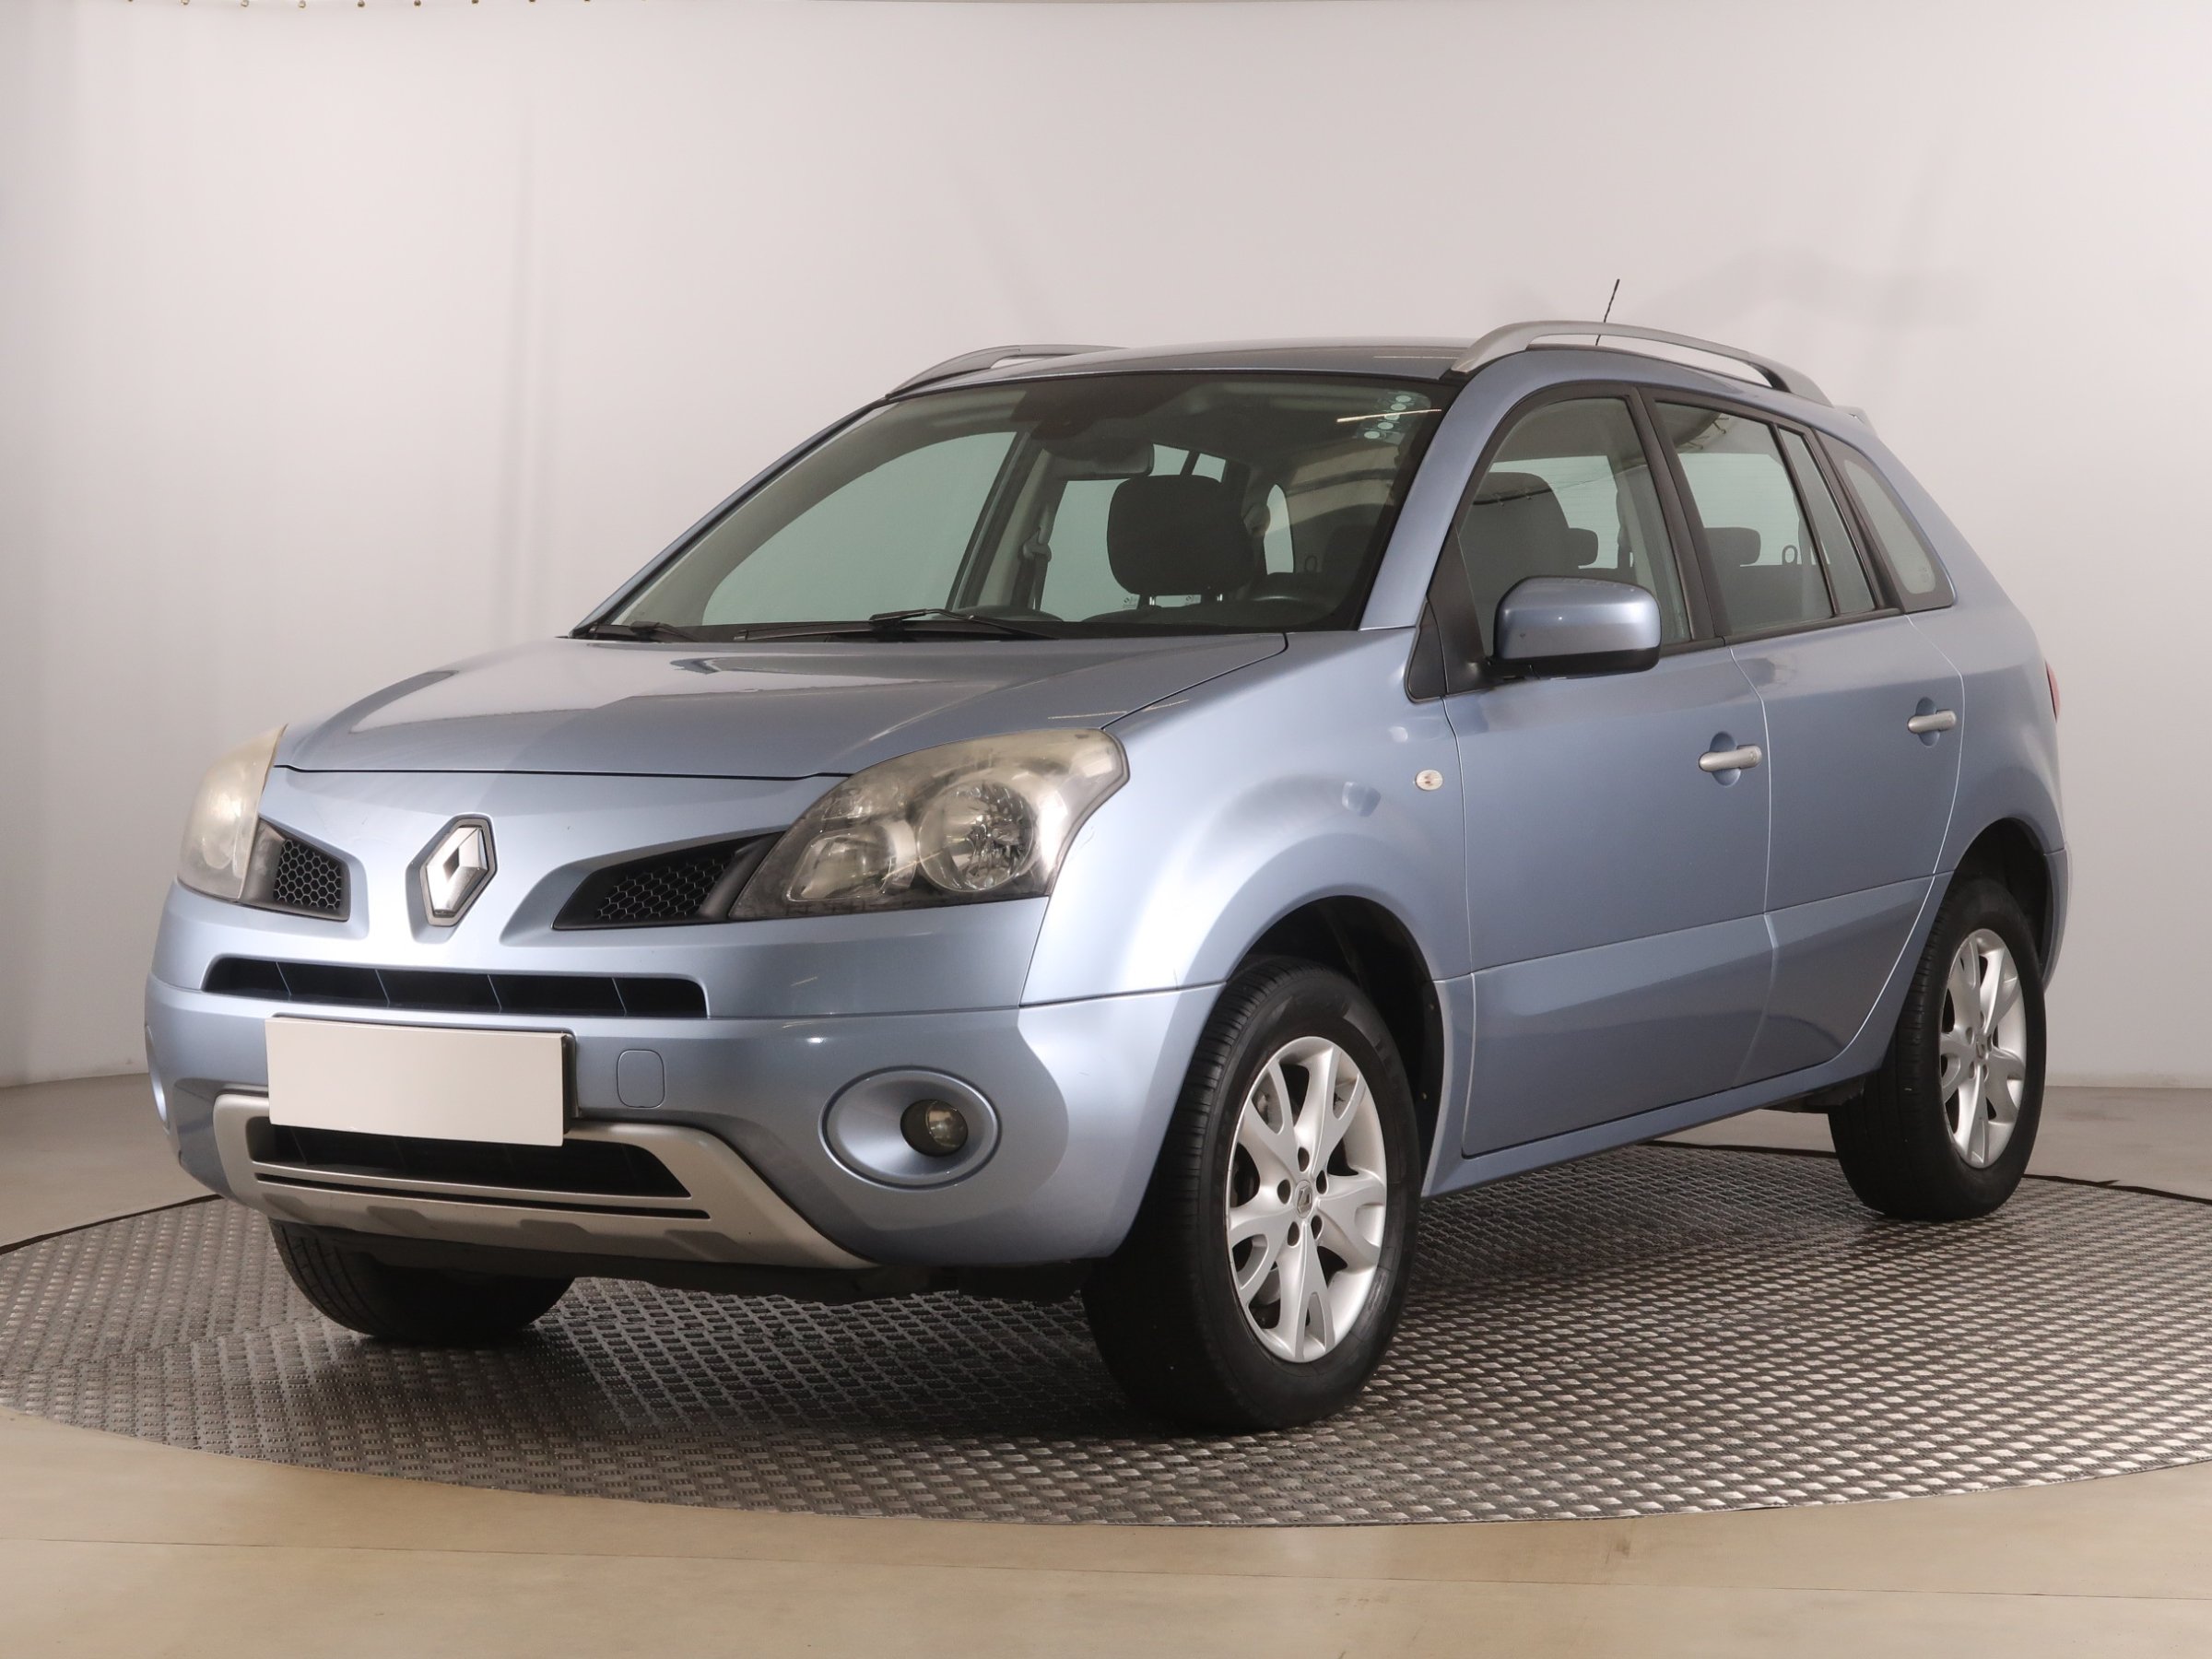 Renault Koleos 2.0 dCi SUV 2010 - 1